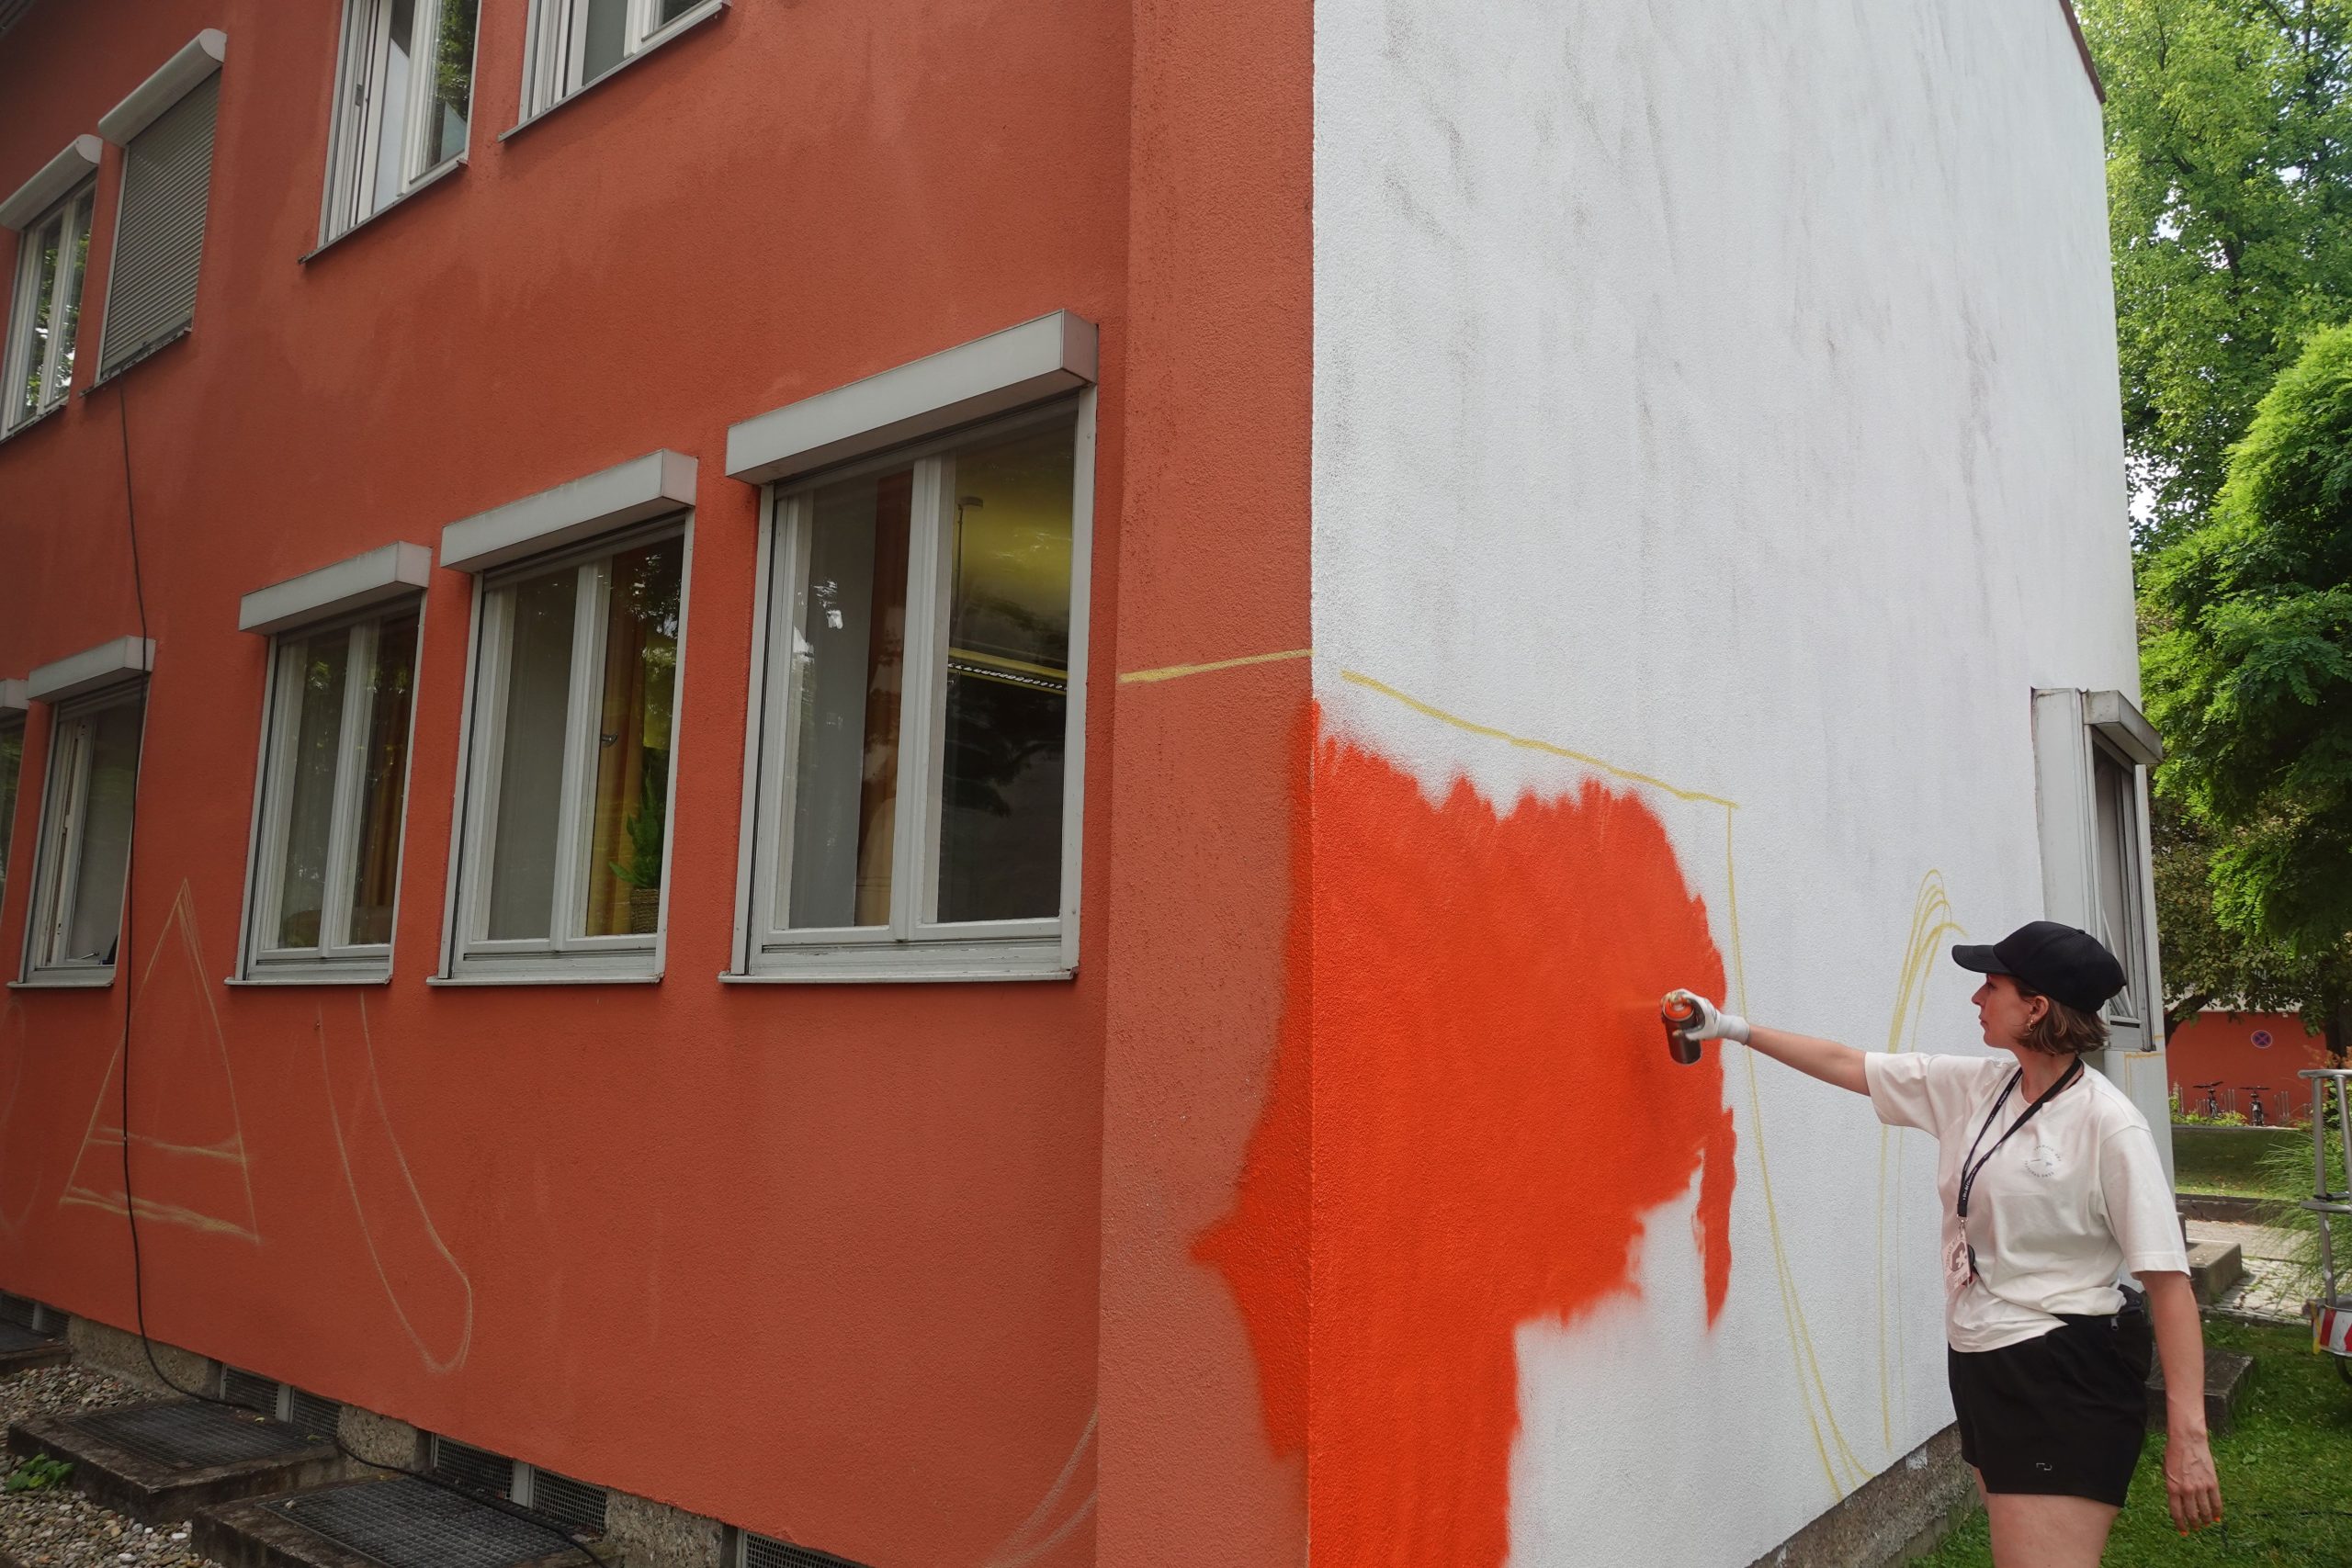 Street-Art-Künstlerin Emily Eldridge hat mit ihrem Werk an der Johann-Rieder-Realschule gerade begonnen. Foto: Innpuls.me 